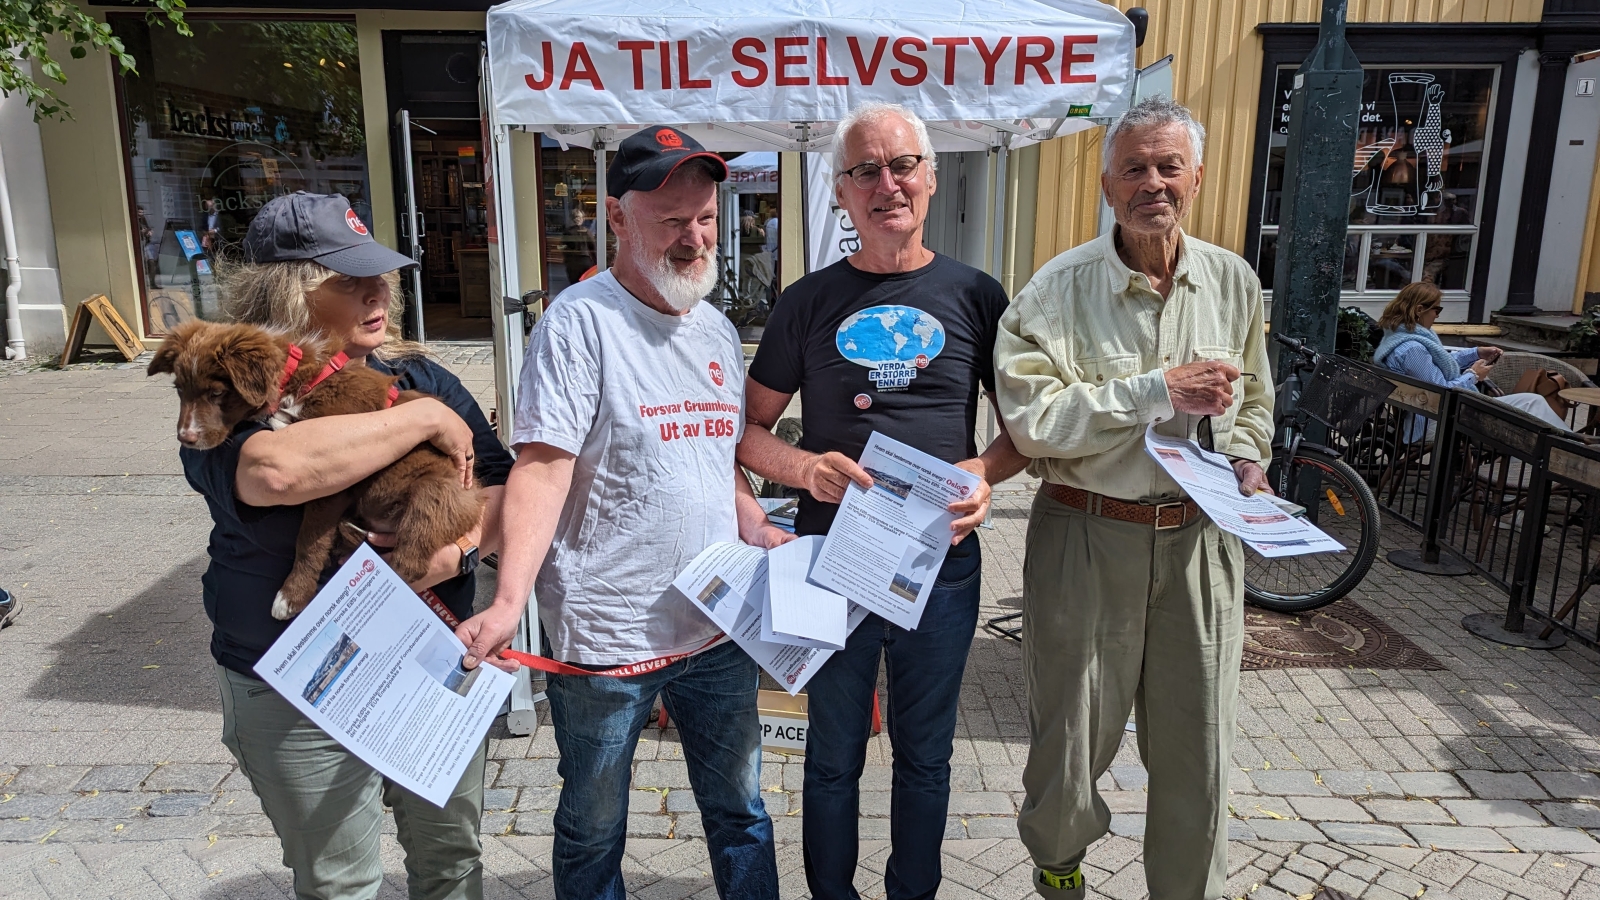 Sør-Trøndelag Nei til EU på stand i Trondheim. Fra venstre: Tone Berg, Jostein Berg, Arne Byrkjeflot og Steinar Nygaard. (Foto: Sindre Humberset)